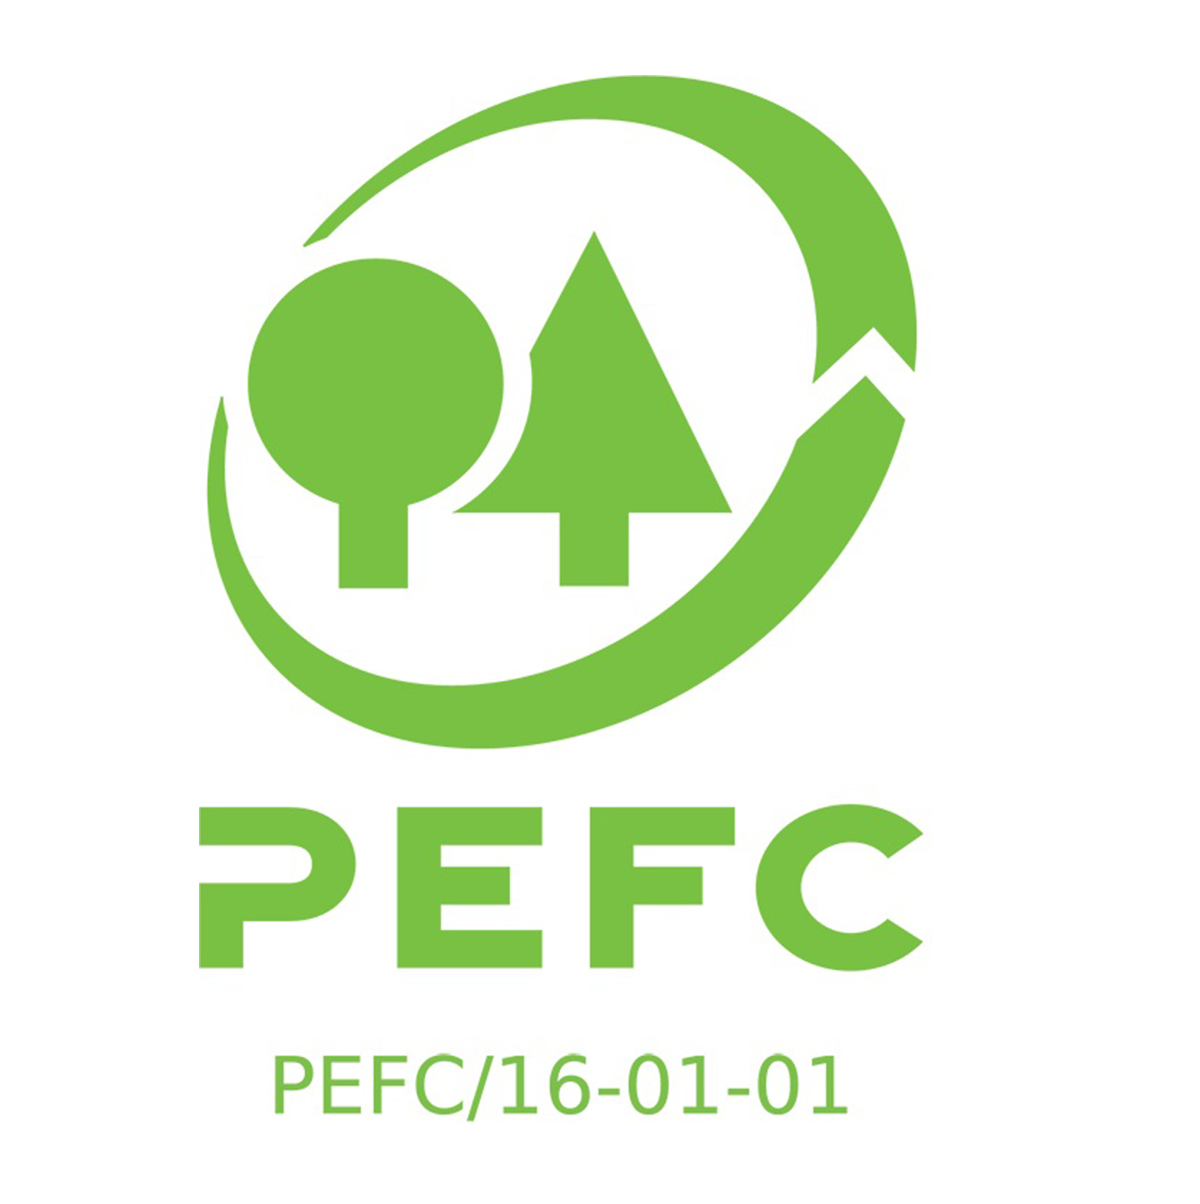 PEFC certifikat za toaletni papir in papirnate brisače